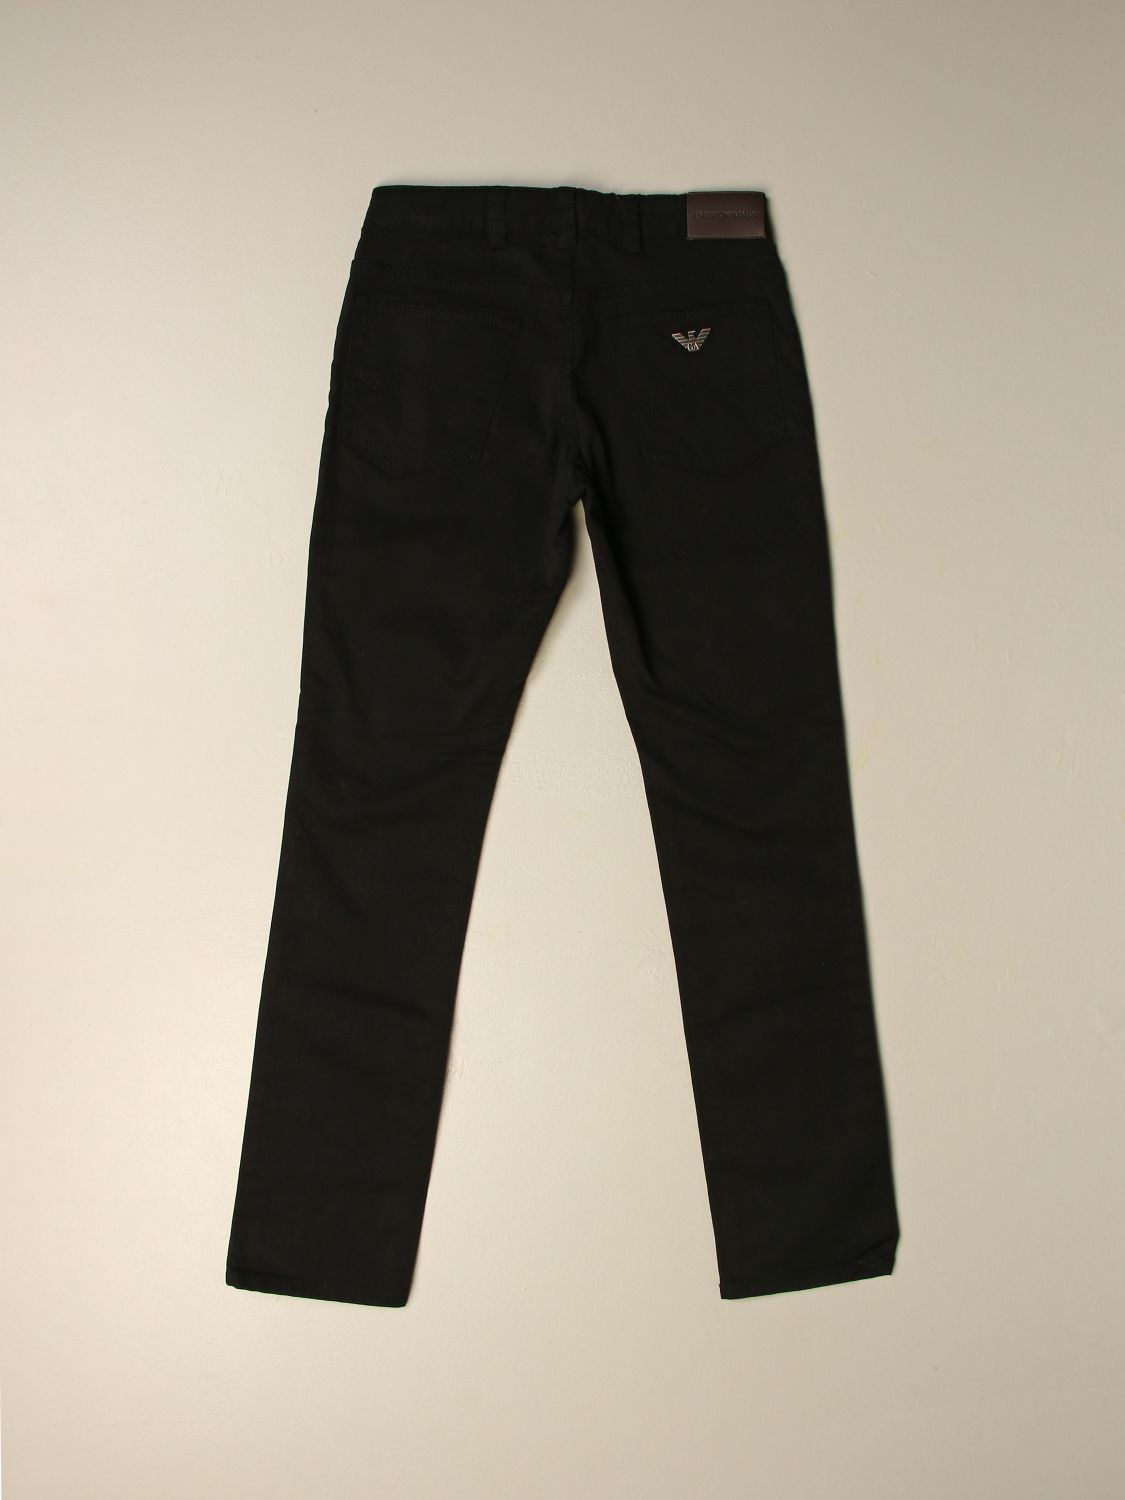 emporio armani black jeans